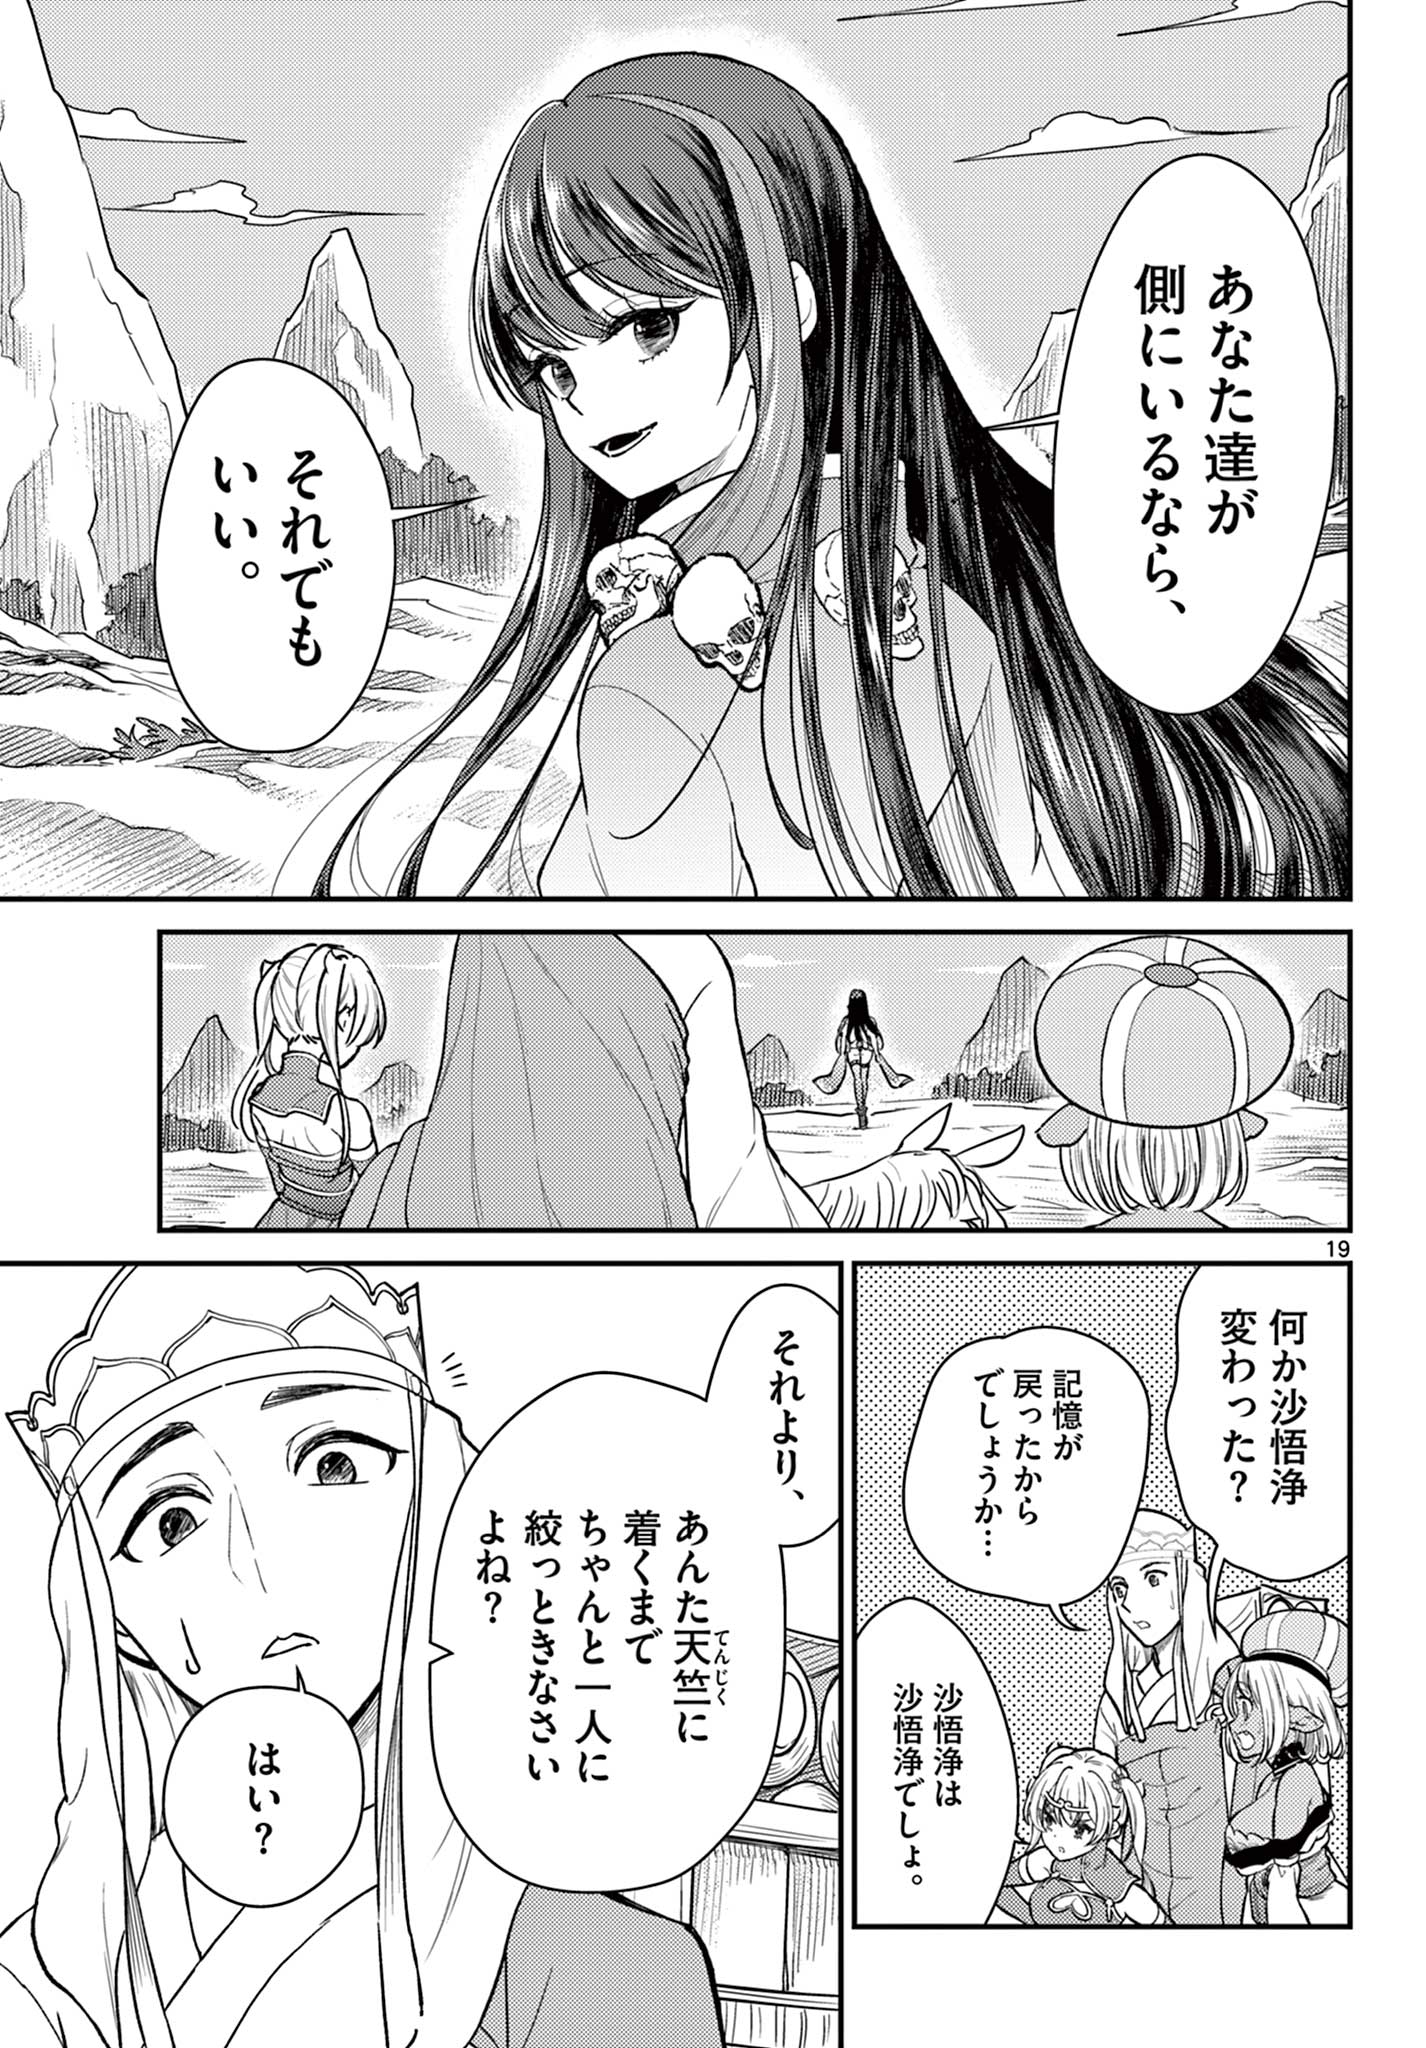 Bonnou Saiyuuki - Chapter 44 - Page 19